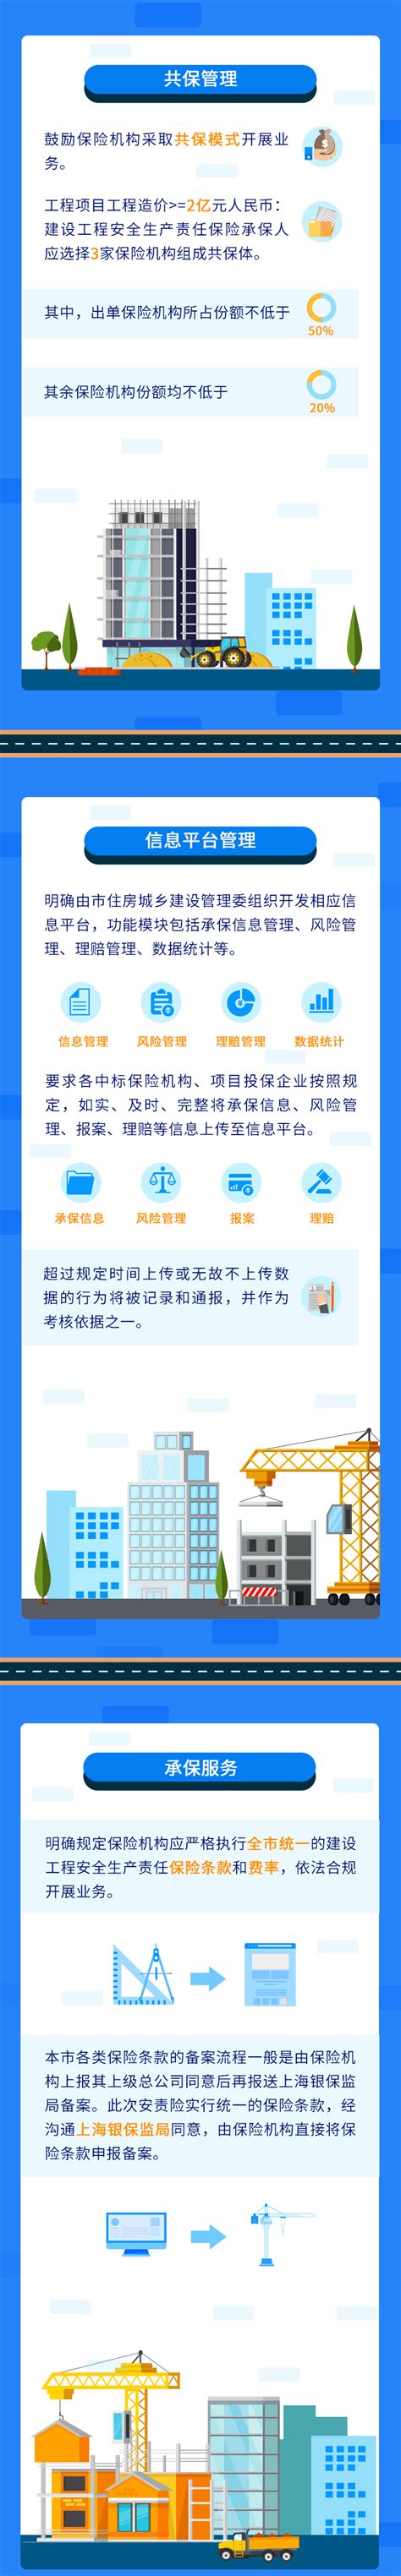 上海市建设局网站